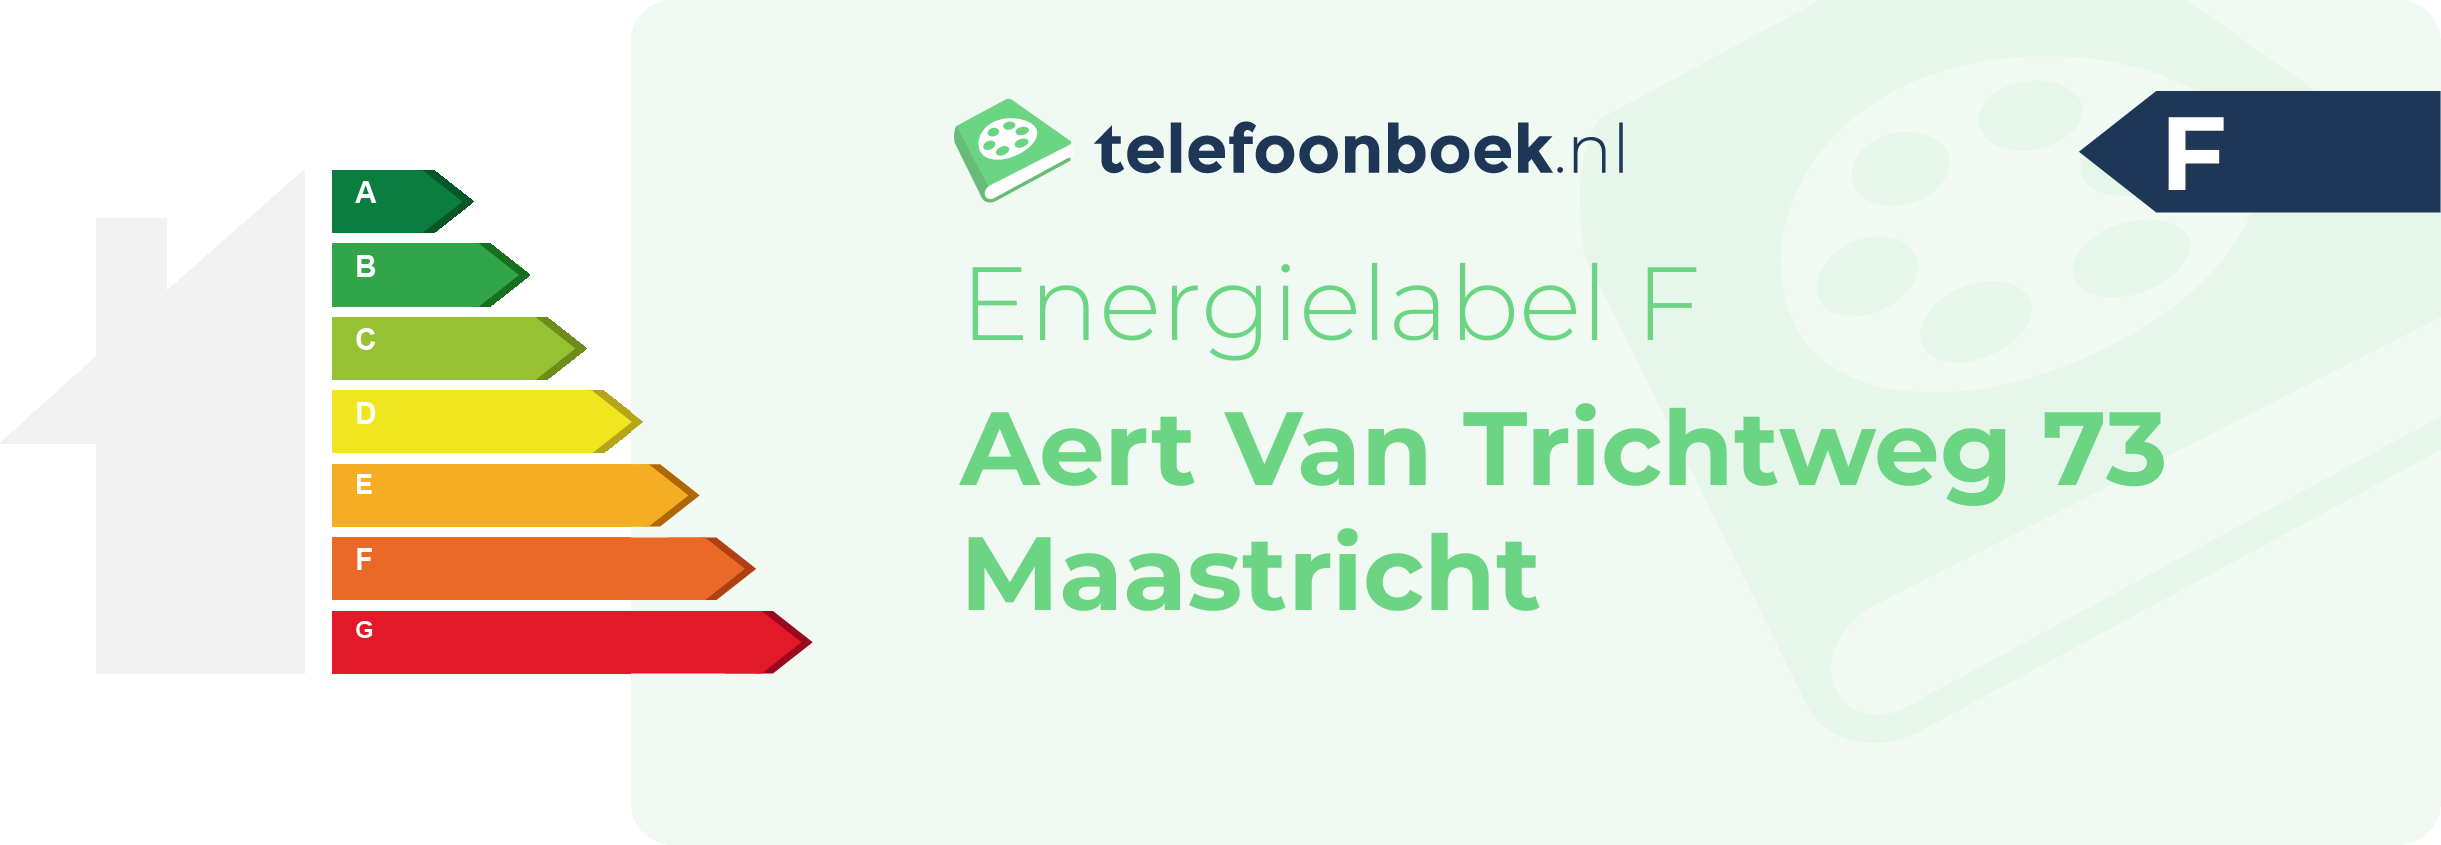 Energielabel Aert Van Trichtweg 73 Maastricht